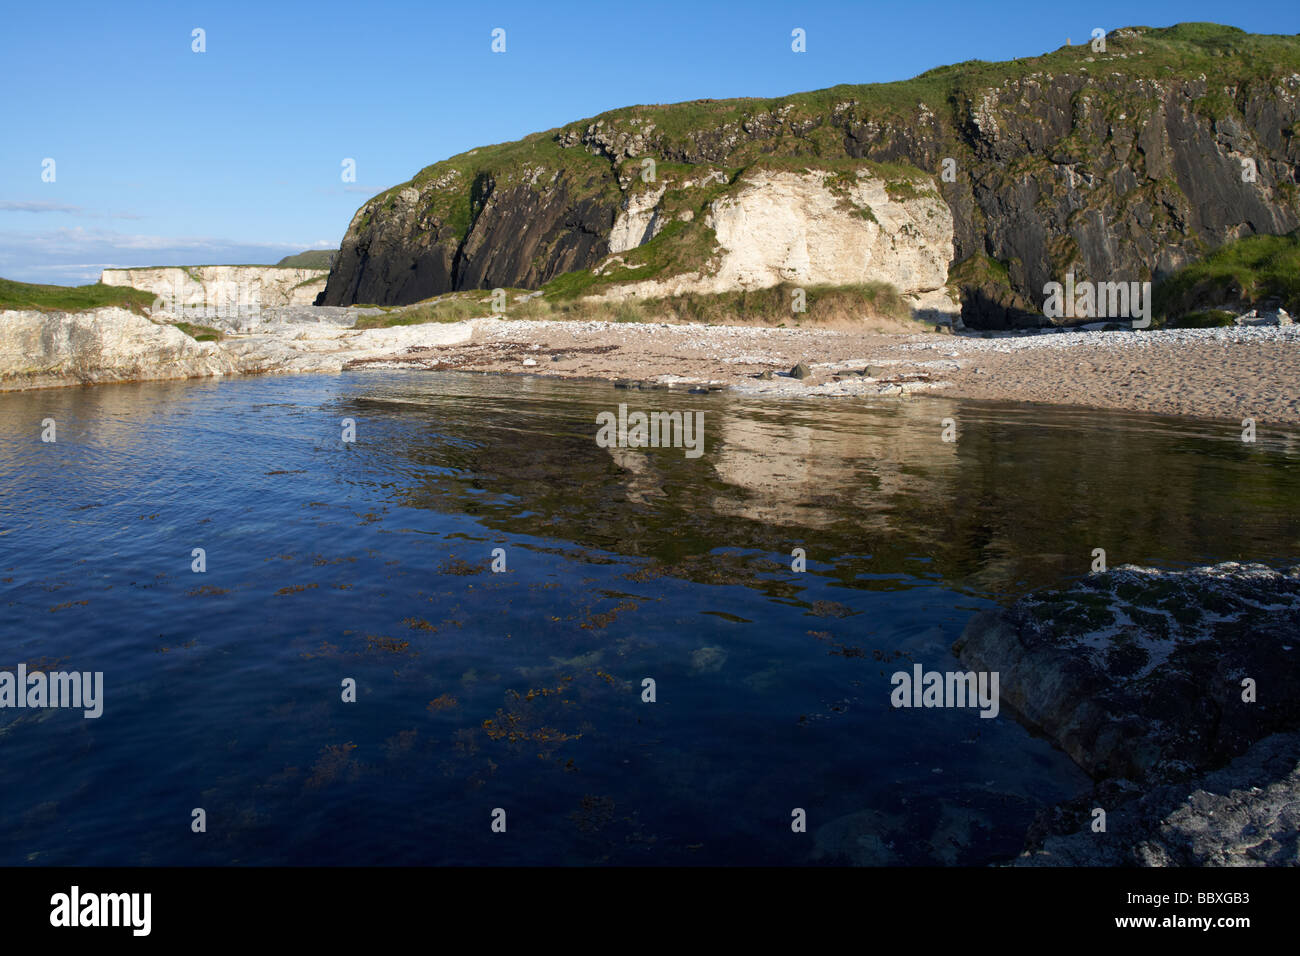 Strand am Sandstrand Port Ballintoy auf North Antrim Küste Grafschaft Antrim Nordirland Vereinigtes Königreich verwendet Dreharbeiten Lage-Spiel der Throne Stockfoto